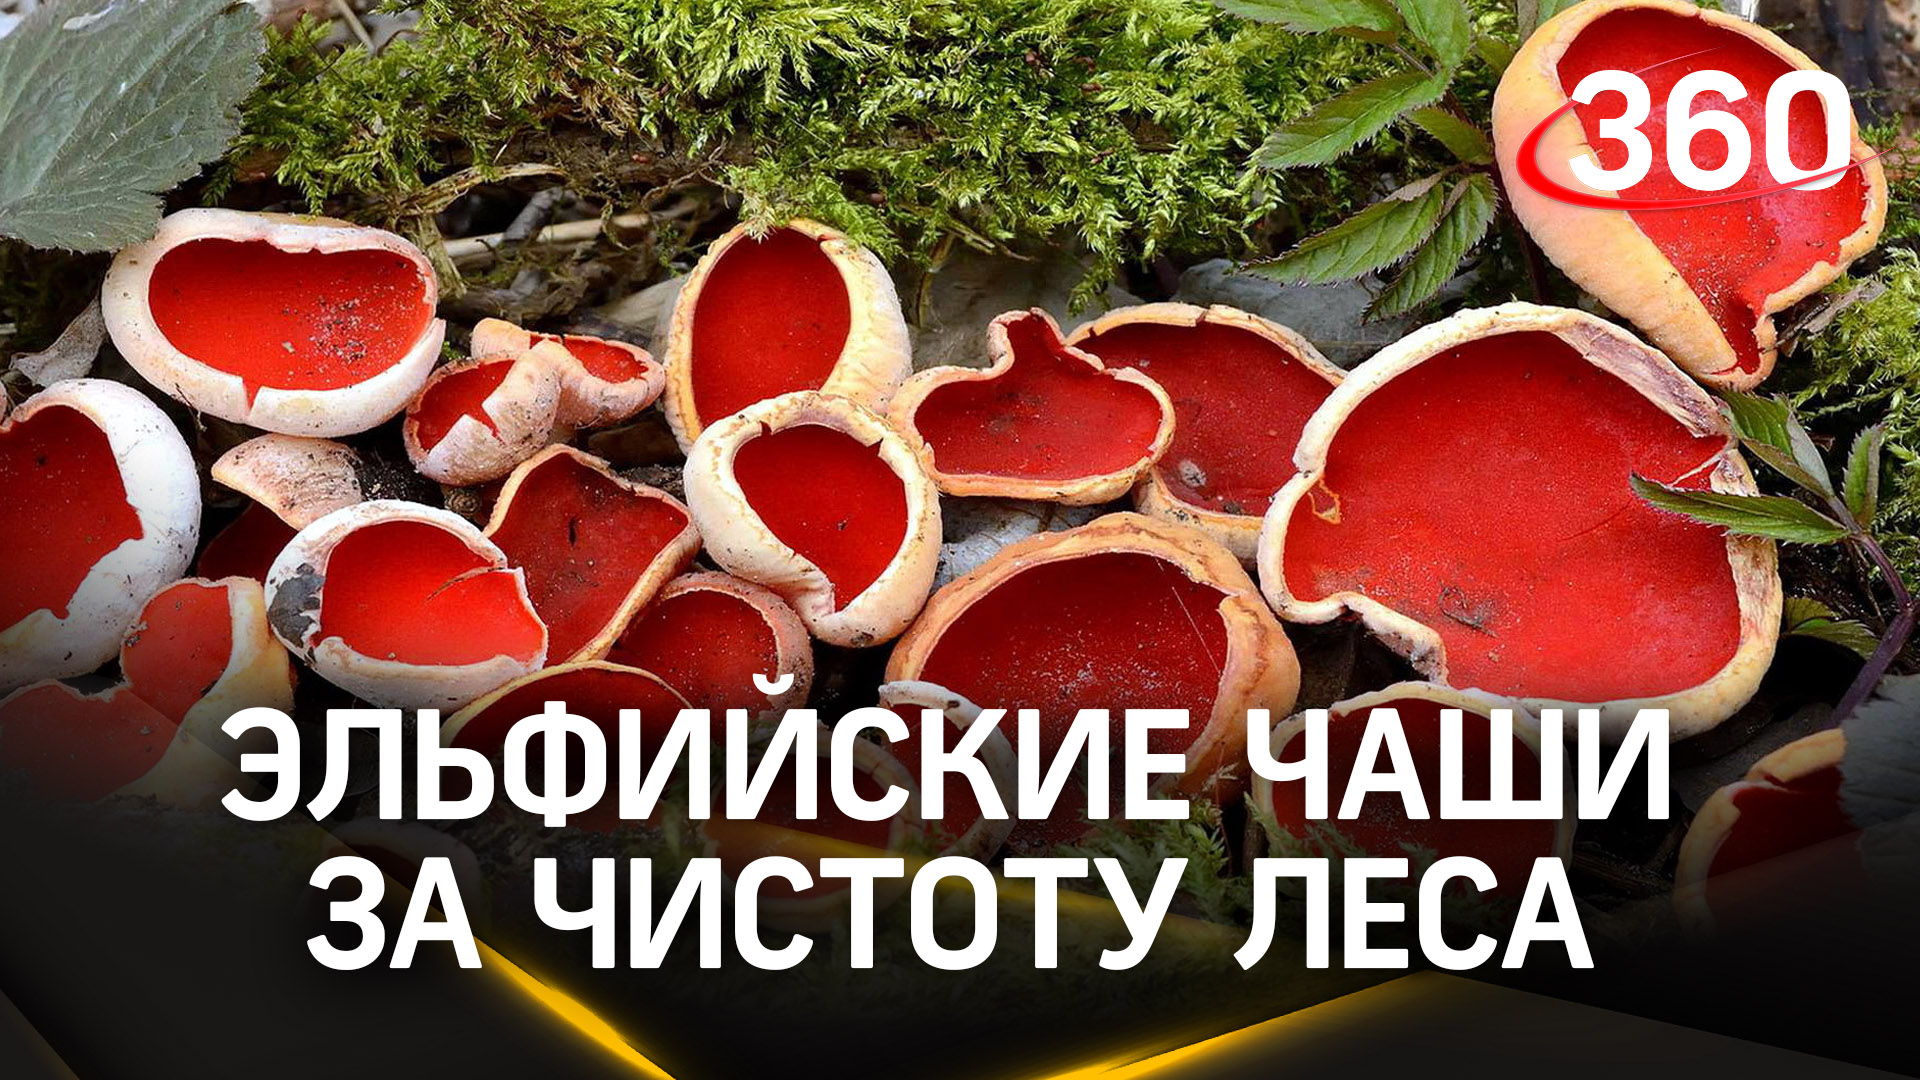 Благодаря грибам «эльфийским чашам» жители Пущина могут быть уверены в чистоте своих лесов